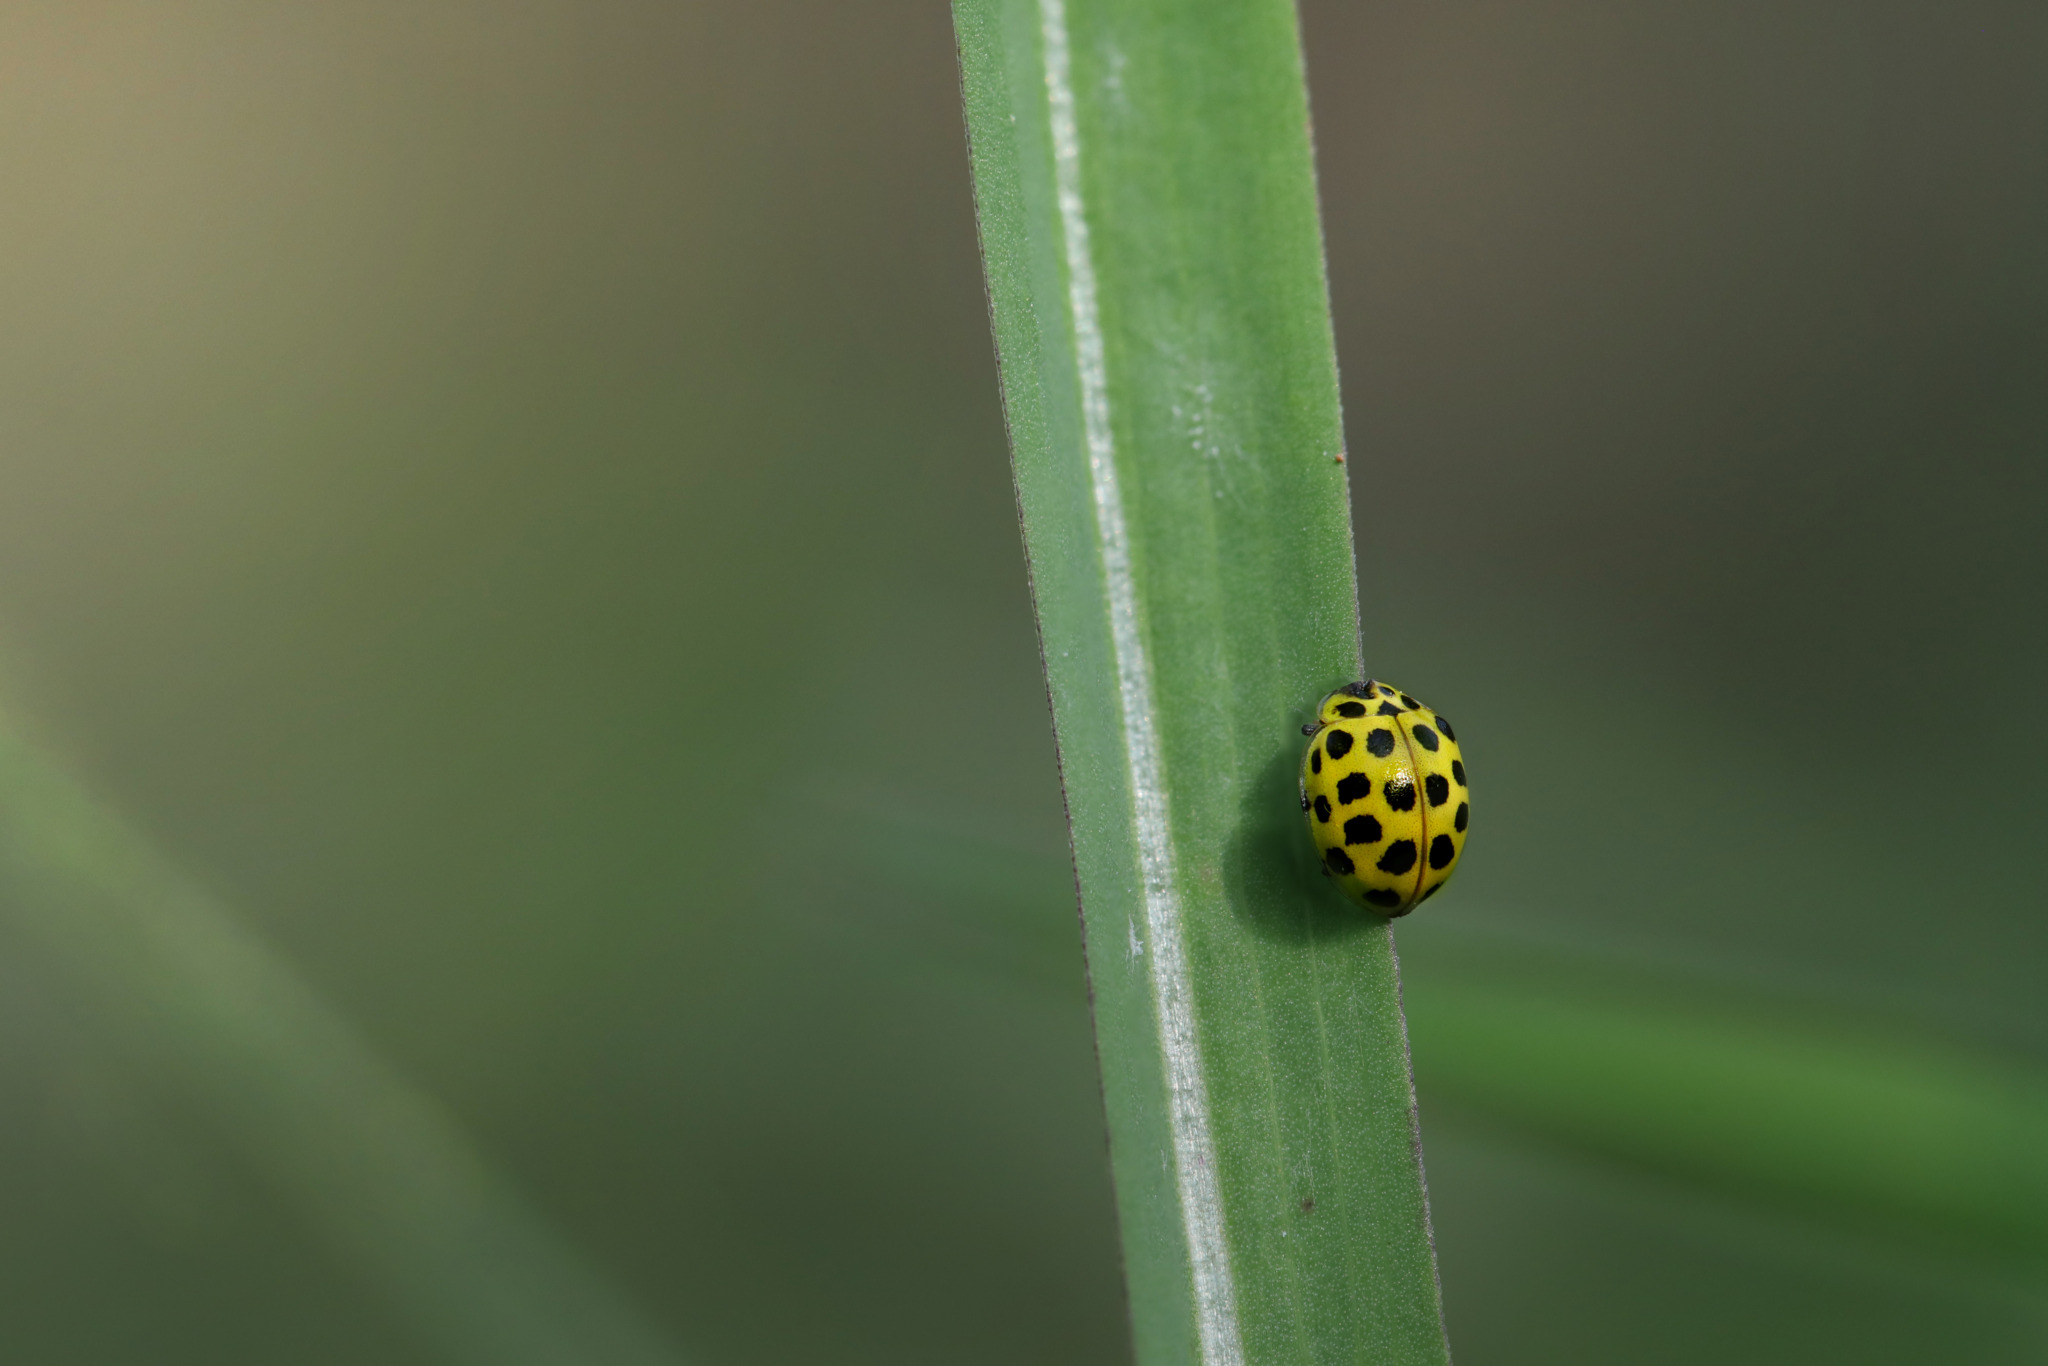 22-spot ladybird (Psyllobora vigintiduopunctata)